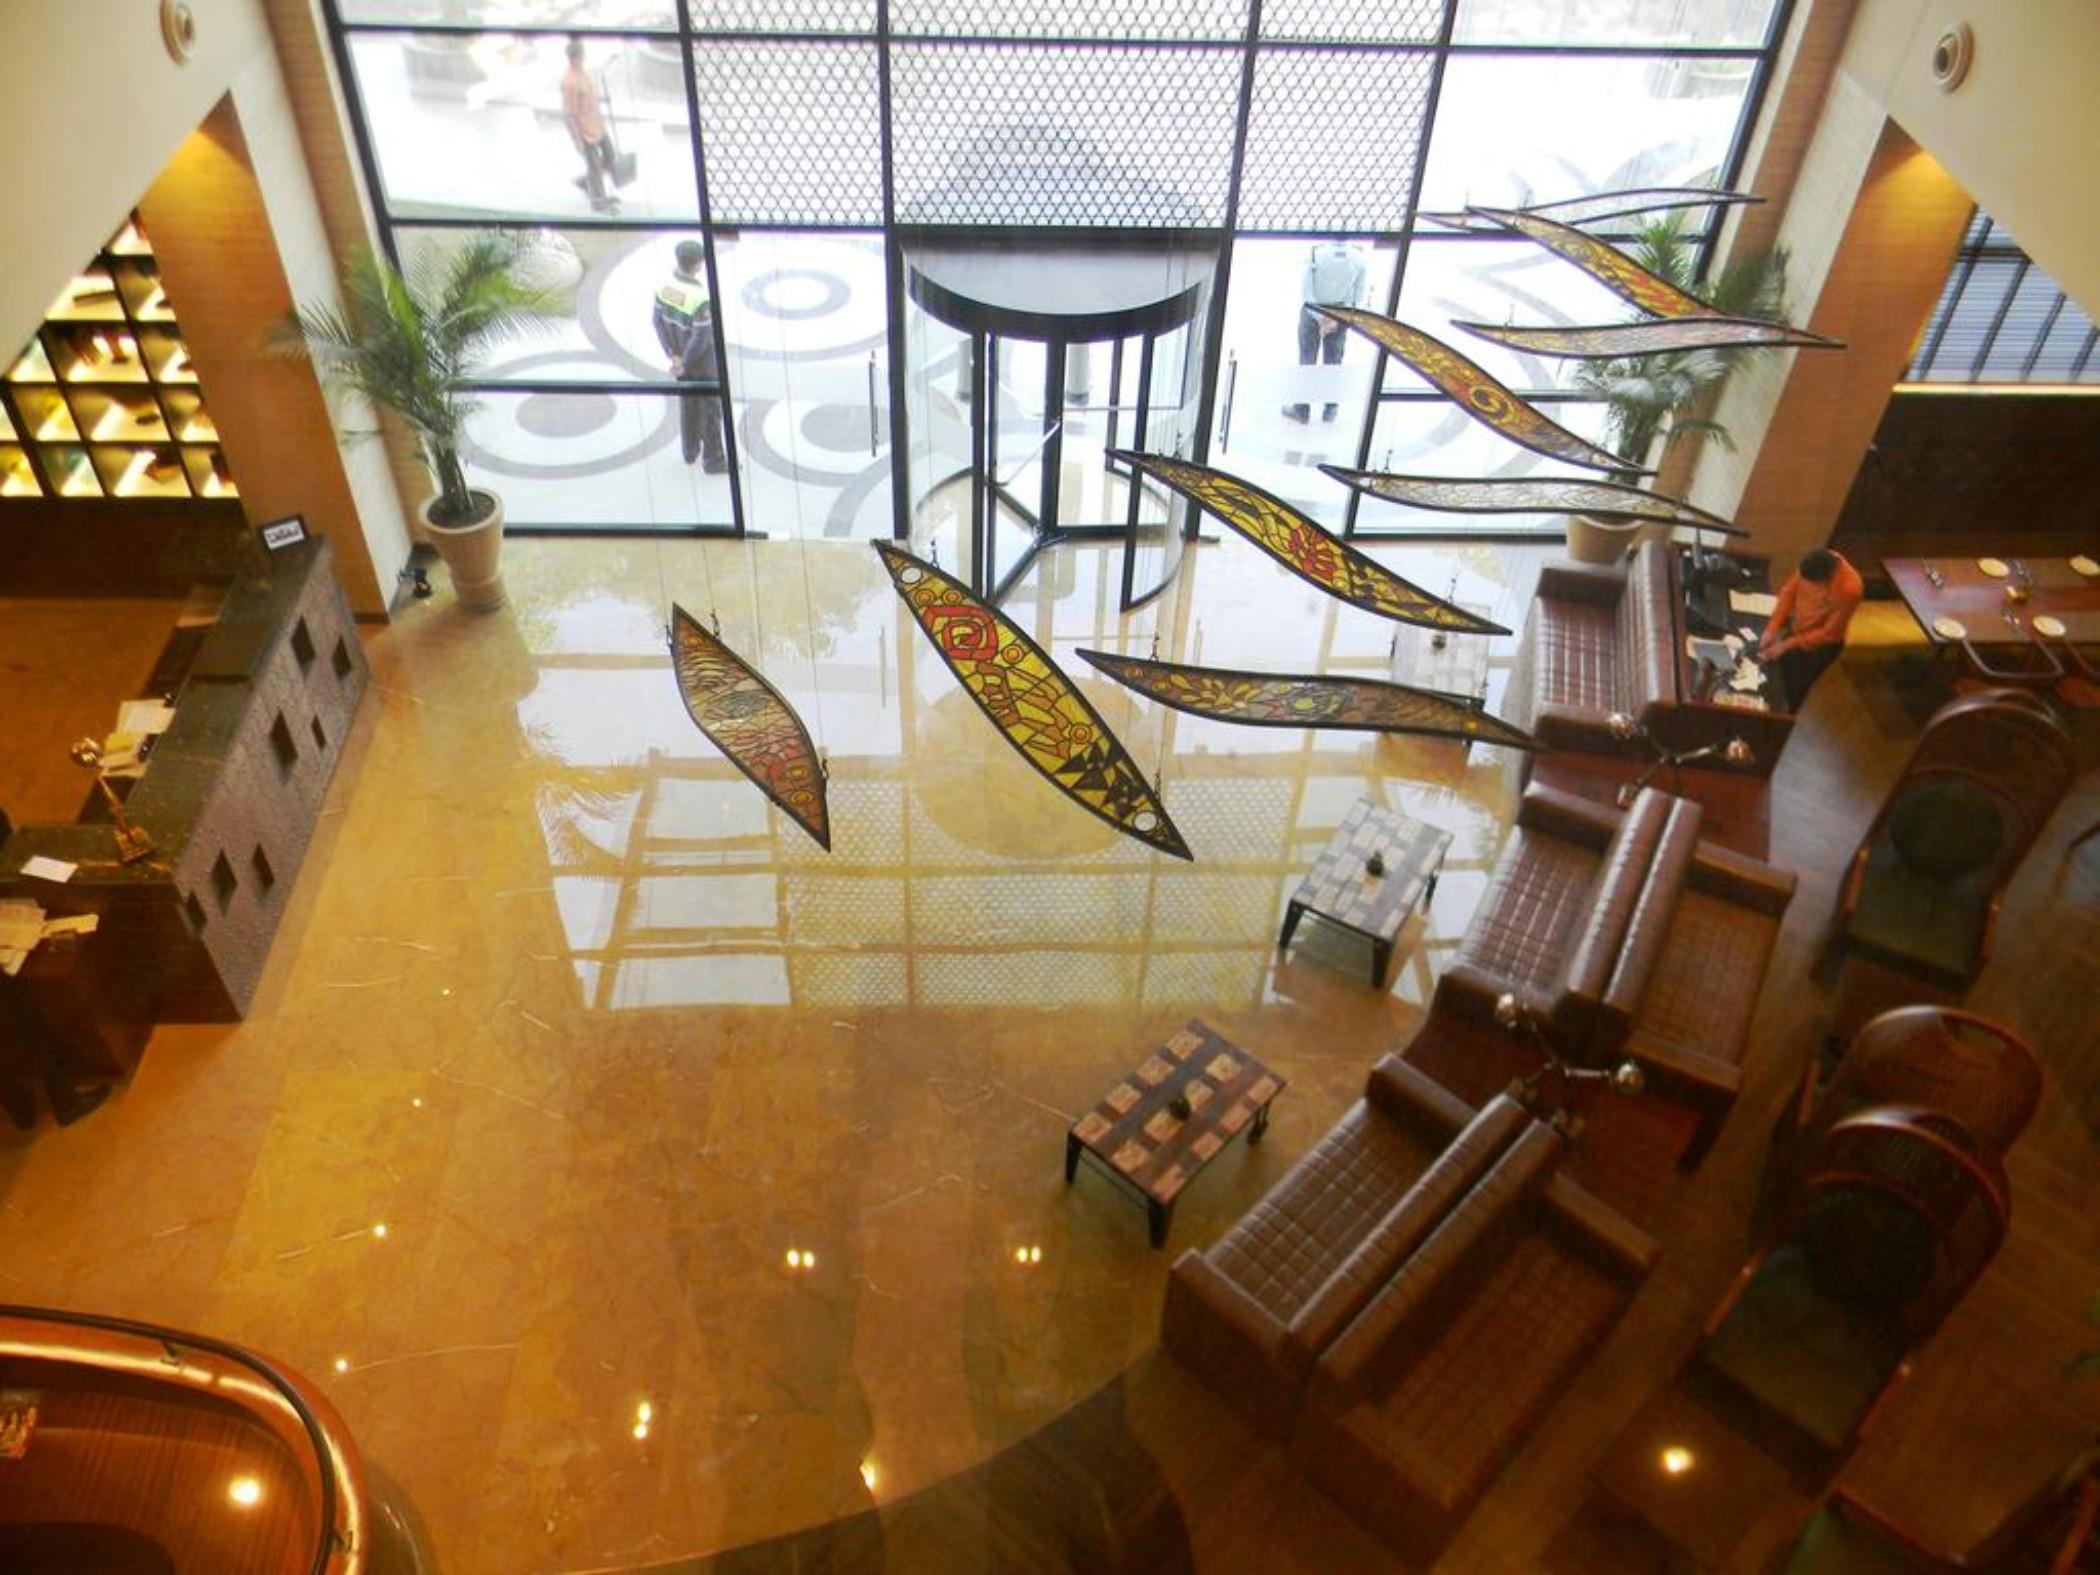 เลมอน ทรี พรีเมียร์ ซิตี้ เซ็นเตอร์ คุรคาออน Hotel คูร์เคาน์ ภายนอก รูปภาพ